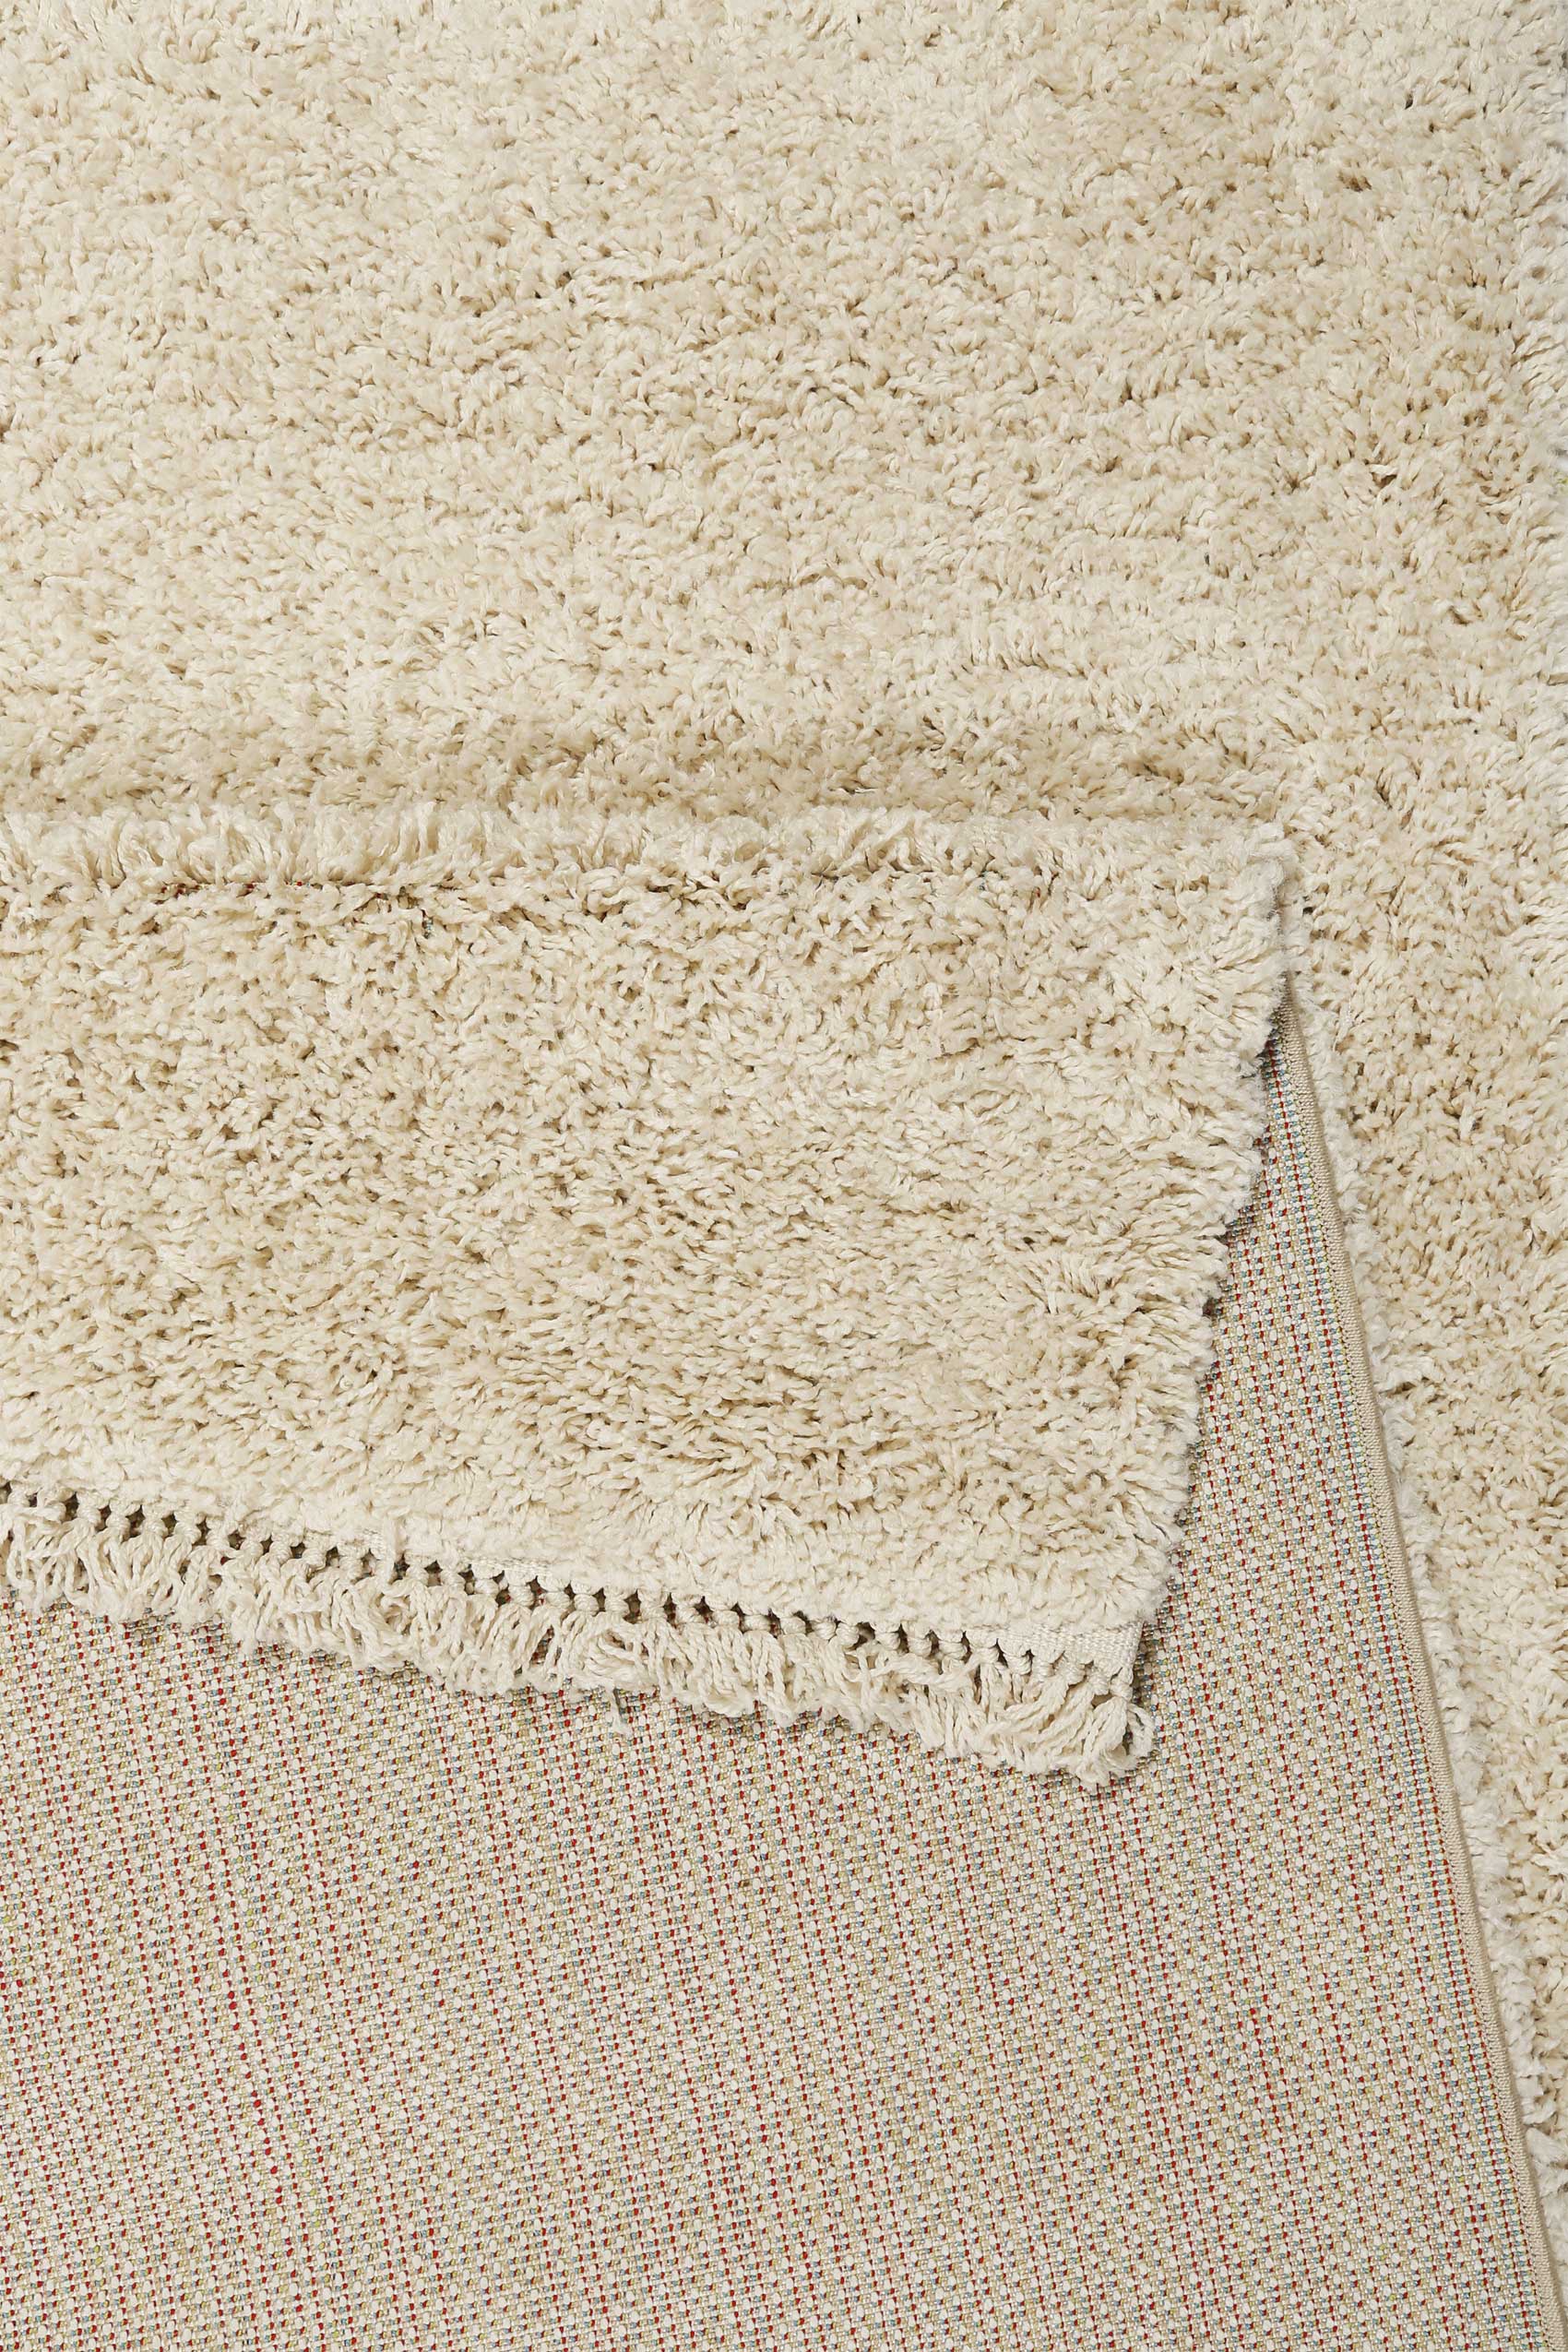 Teppich Creme Beige im Berber Style » Studio zero « WECONhome - Ansicht 3